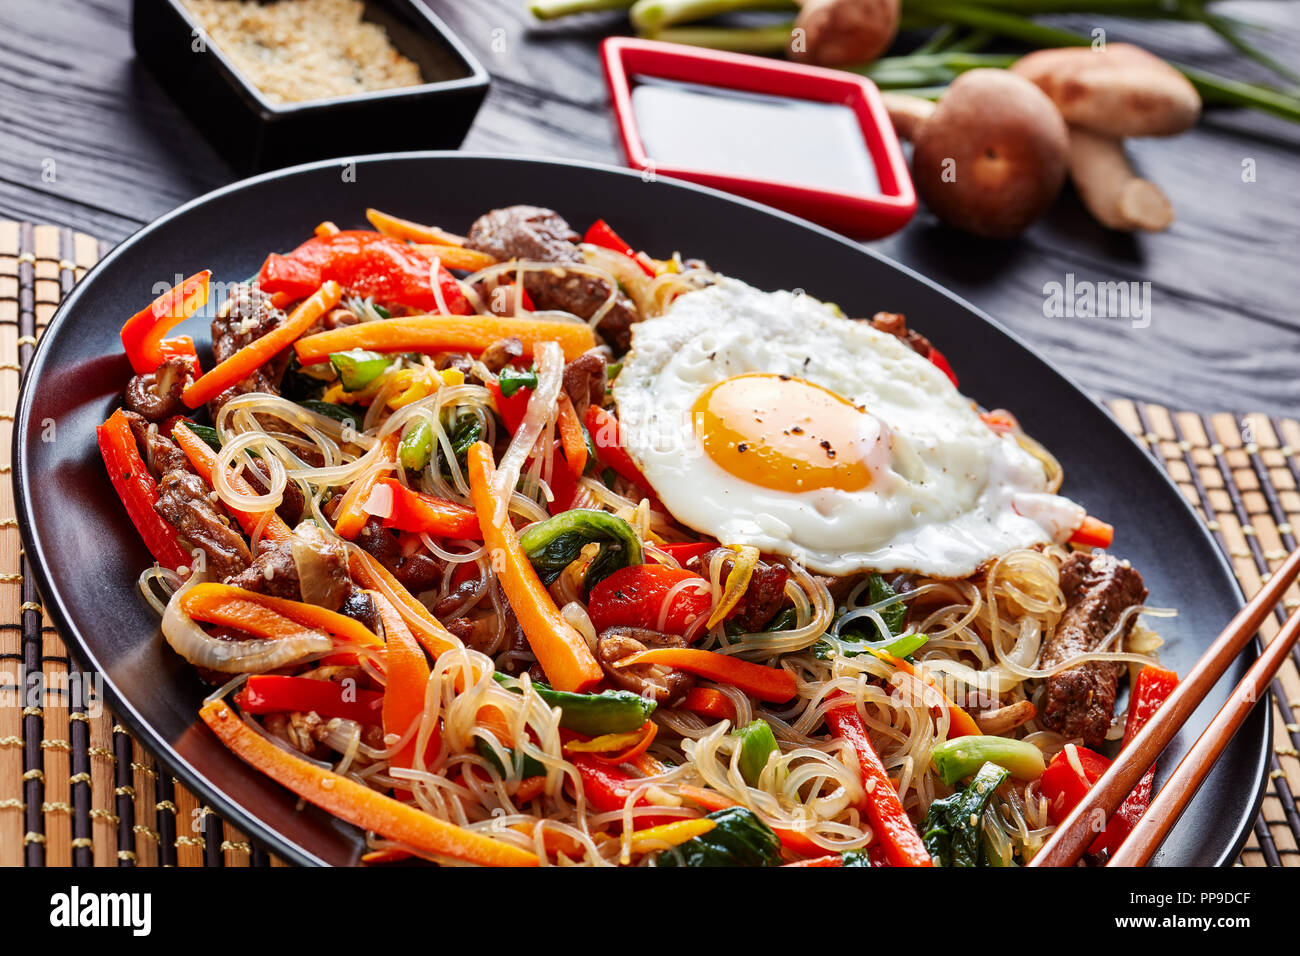 Japchae piatto coreano: vetro tagliatelle con stir peperone fritto, carote, spinaci, la cipolla, l'uovo, aglio, funghi shiitake e lunghe strisce di carne fritti, Dre Foto Stock